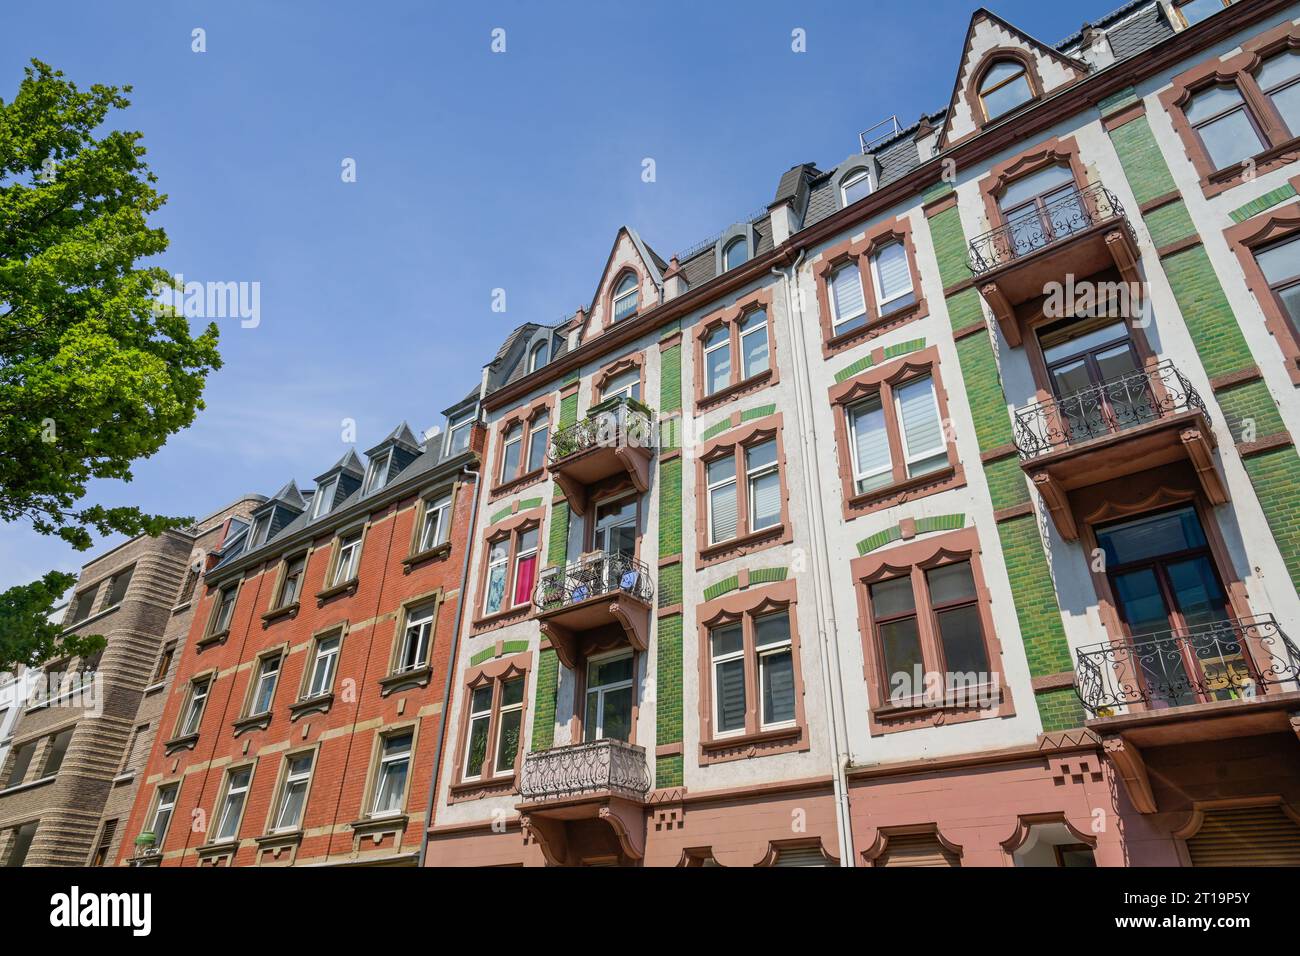 Altbauten, Fassaden, Hermann-Wendel-Straße, Westend, Frankfurt am Main, Hessen, Deutschland Stock Photo